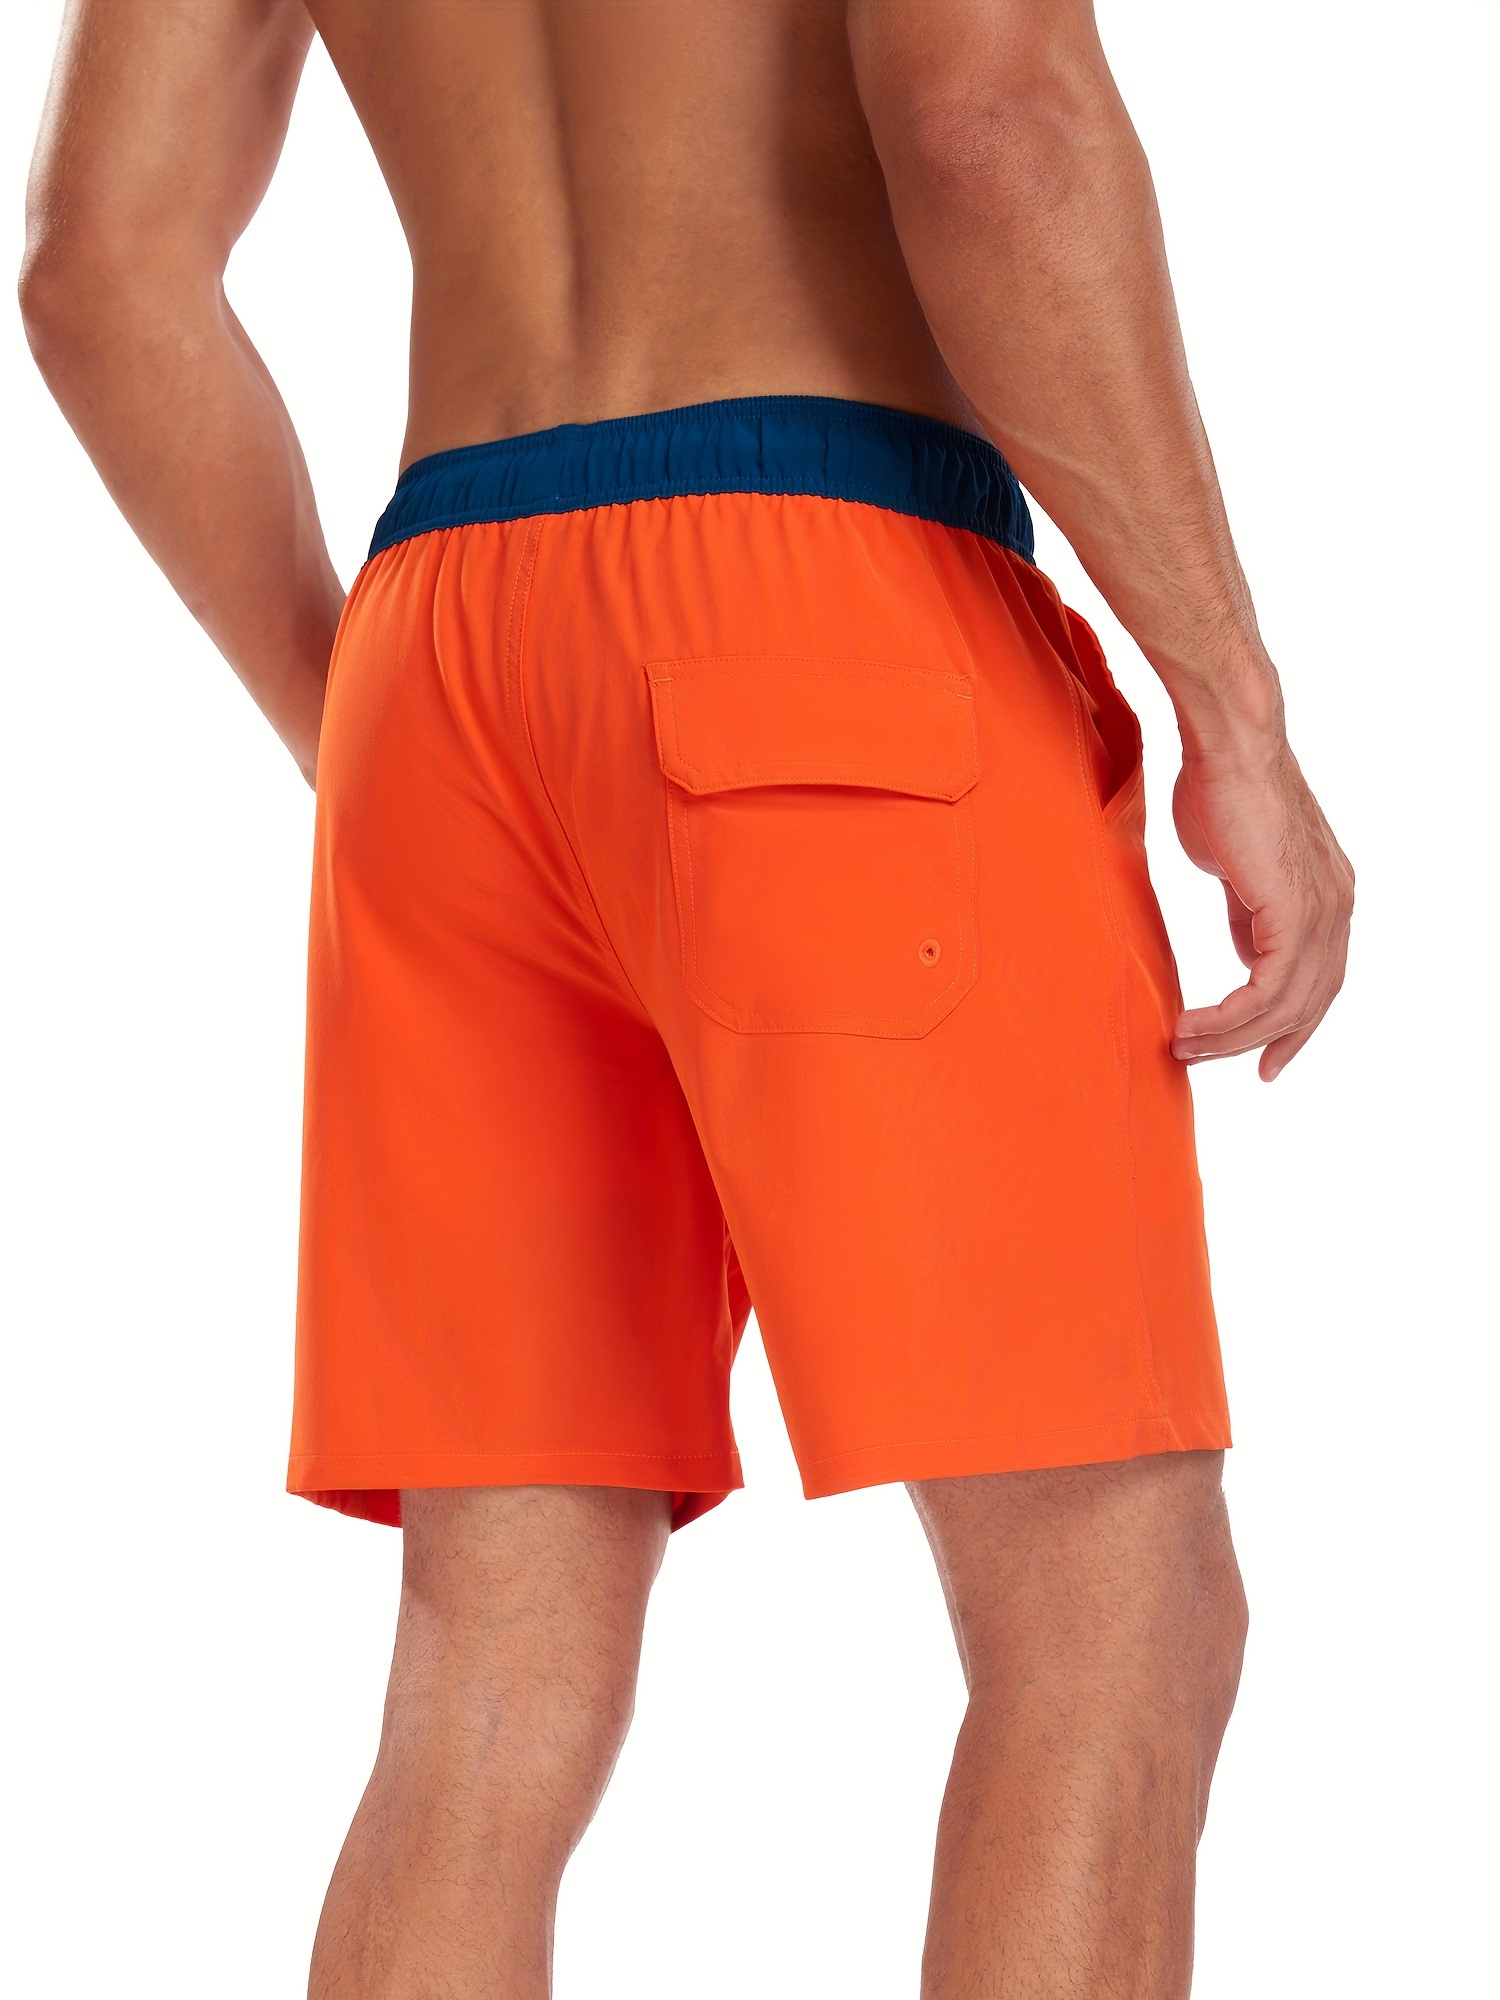 Men Burnt Orange Solid Color Swim Trunks with Compression Liner Board Shorts